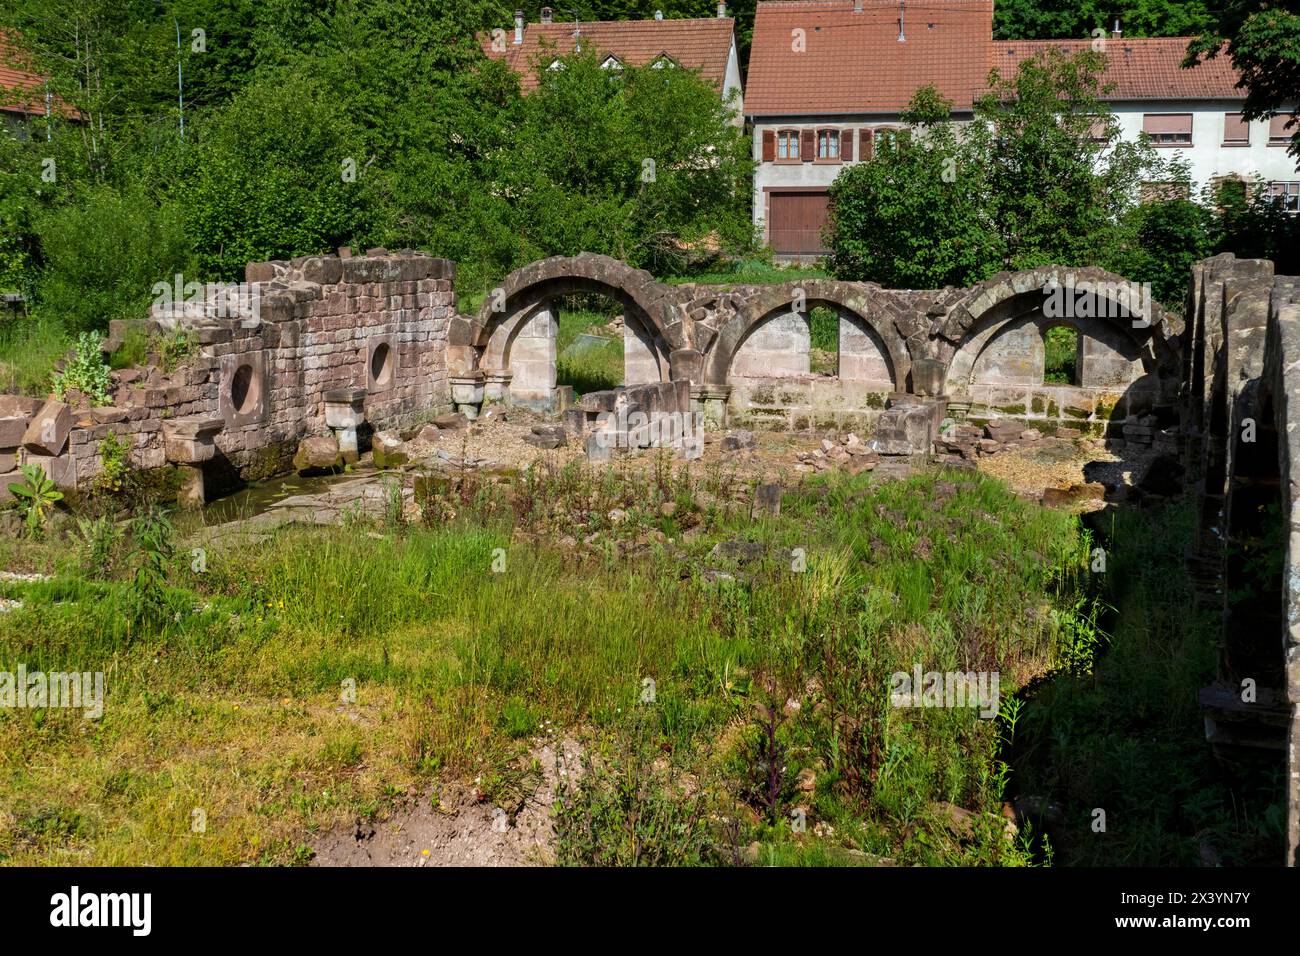 Ruine des Nonnen kloster Krauftal, in Graufthal im Elsass Frankreich Foto Stock